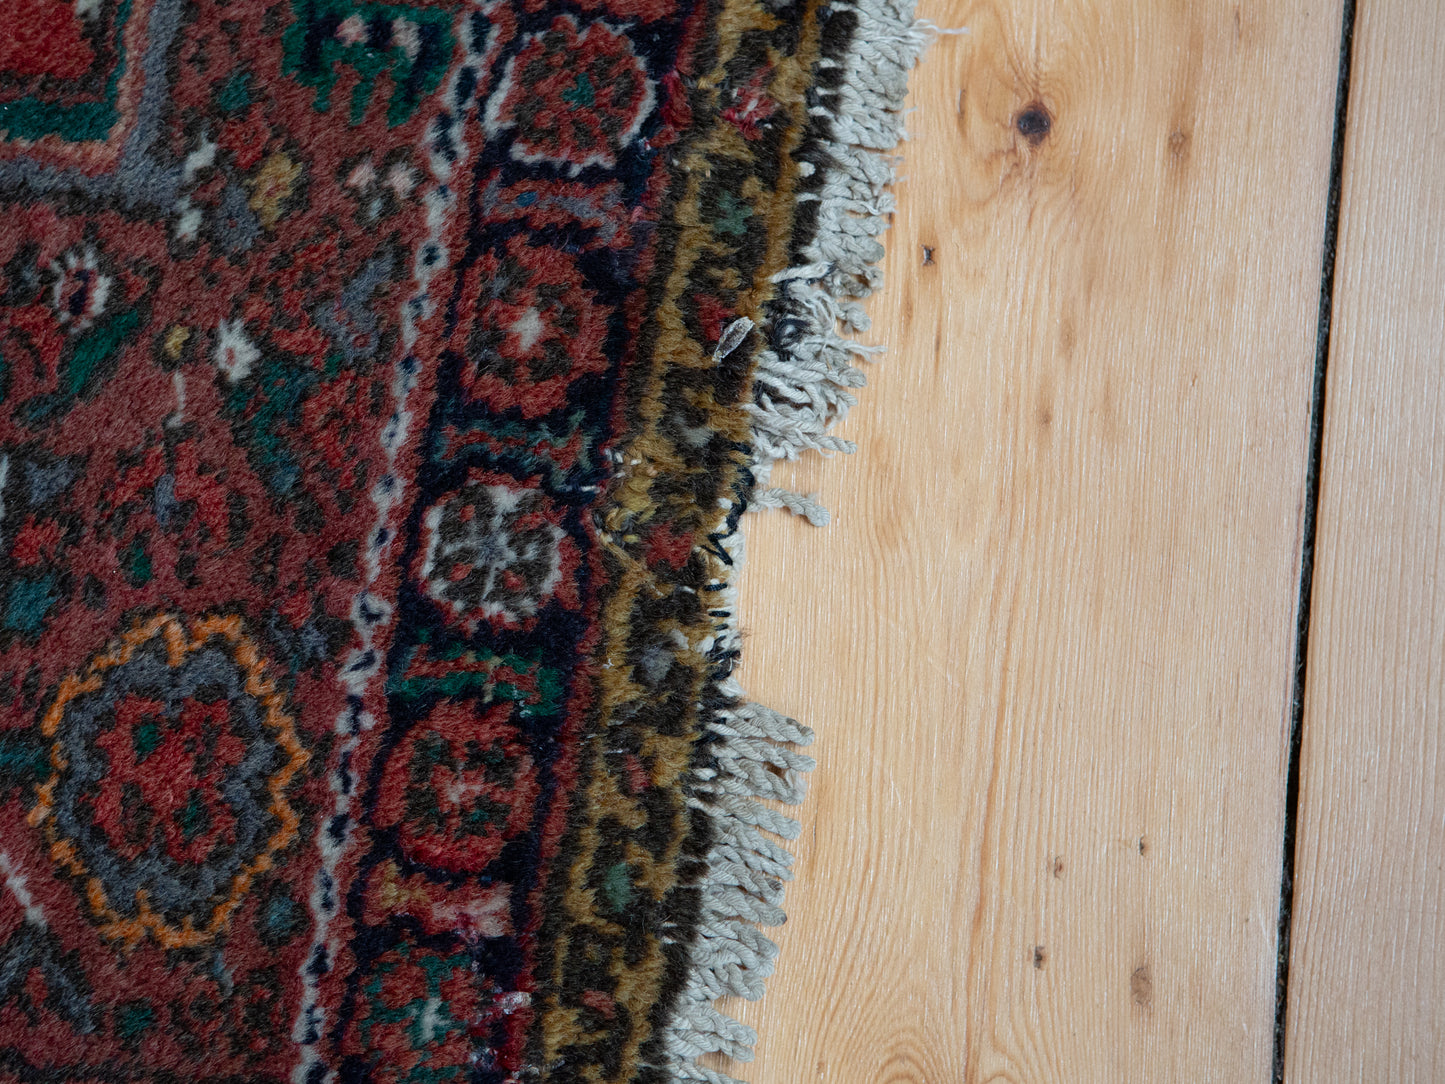 Beau tapis persan vintage | Patine et couleurs merveilleuses | 120 x 90 cm (#4)